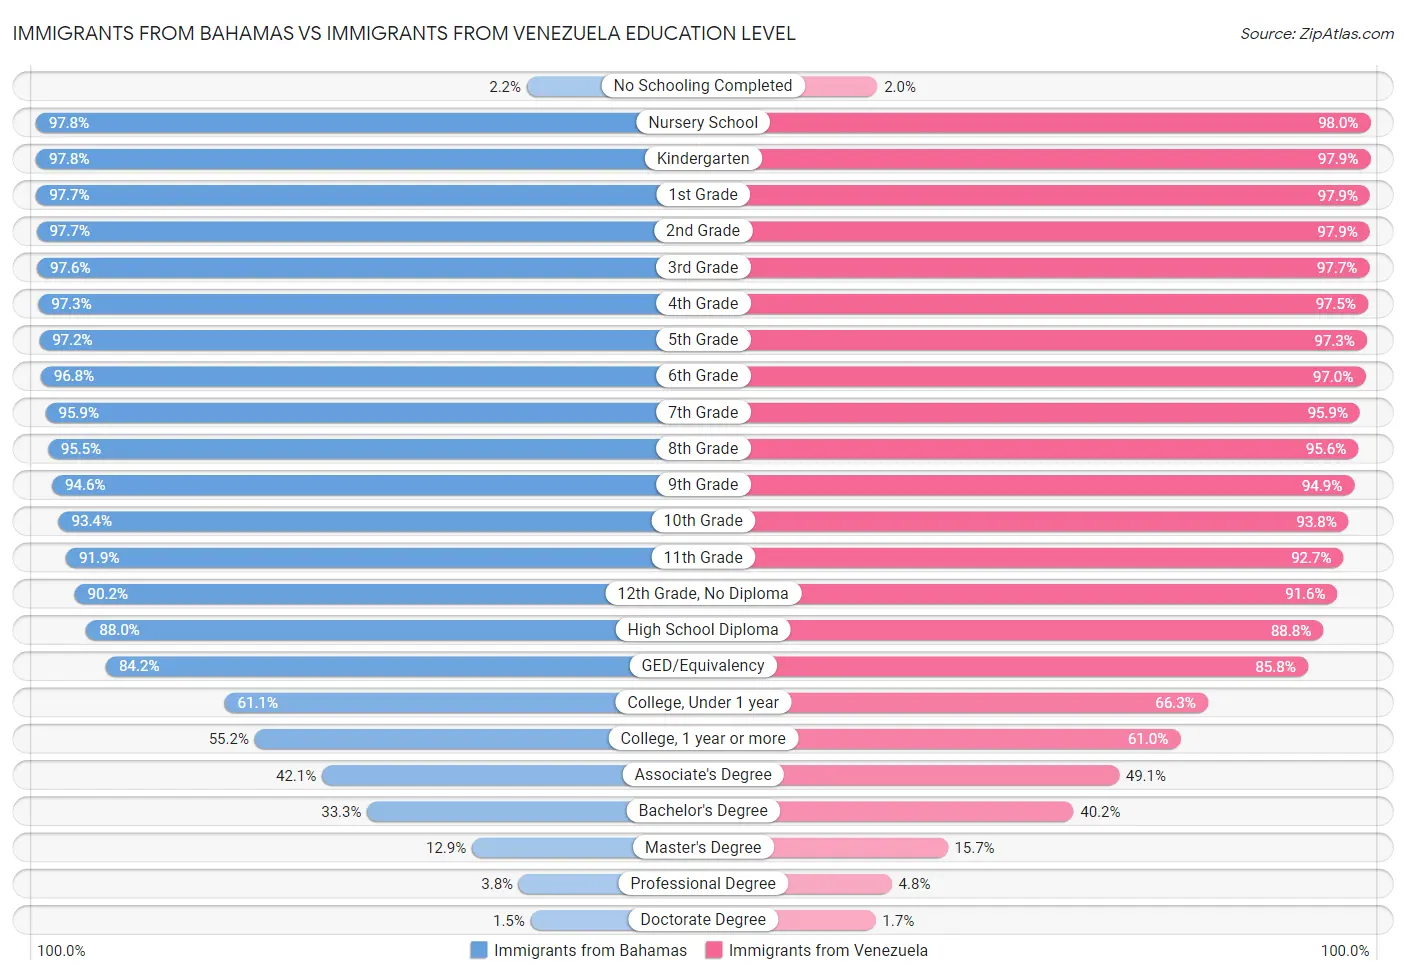 Immigrants from Bahamas vs Immigrants from Venezuela Education Level